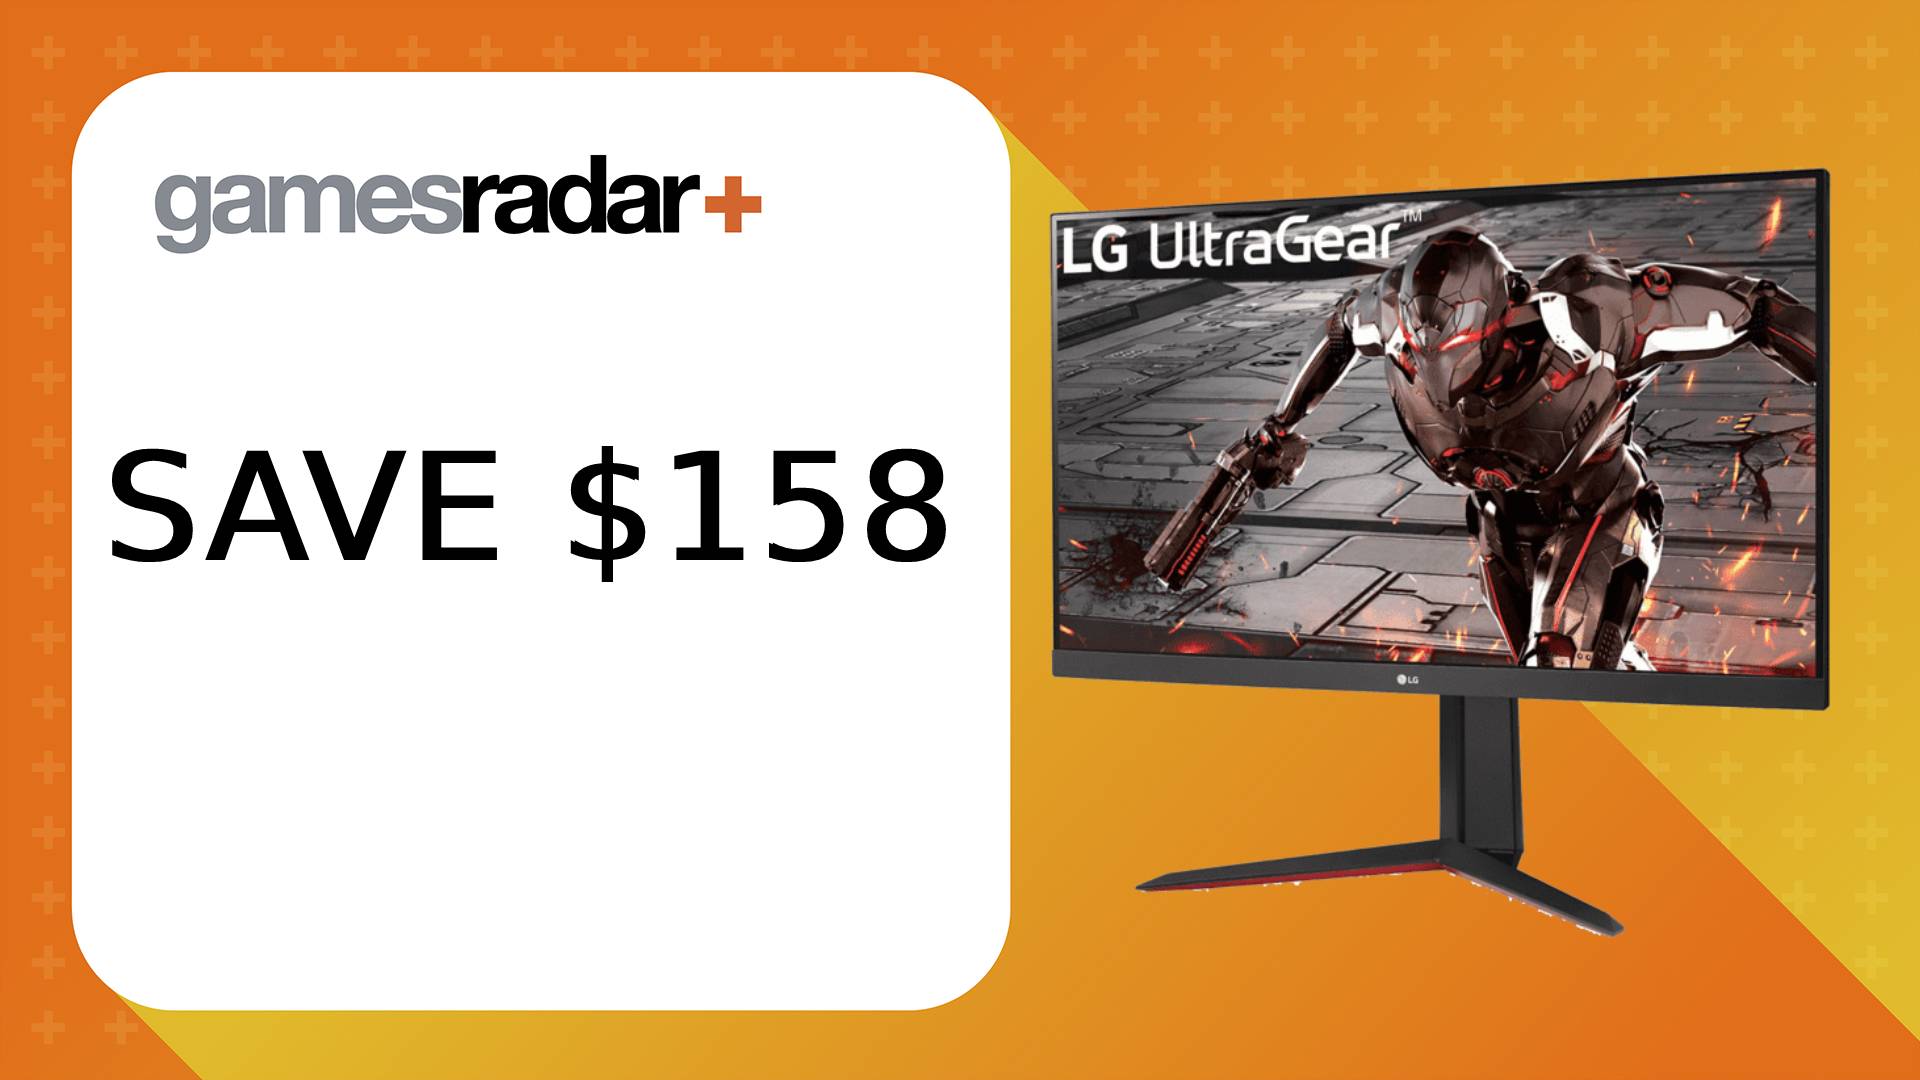 LG Ultragear 32GN650-B deal post